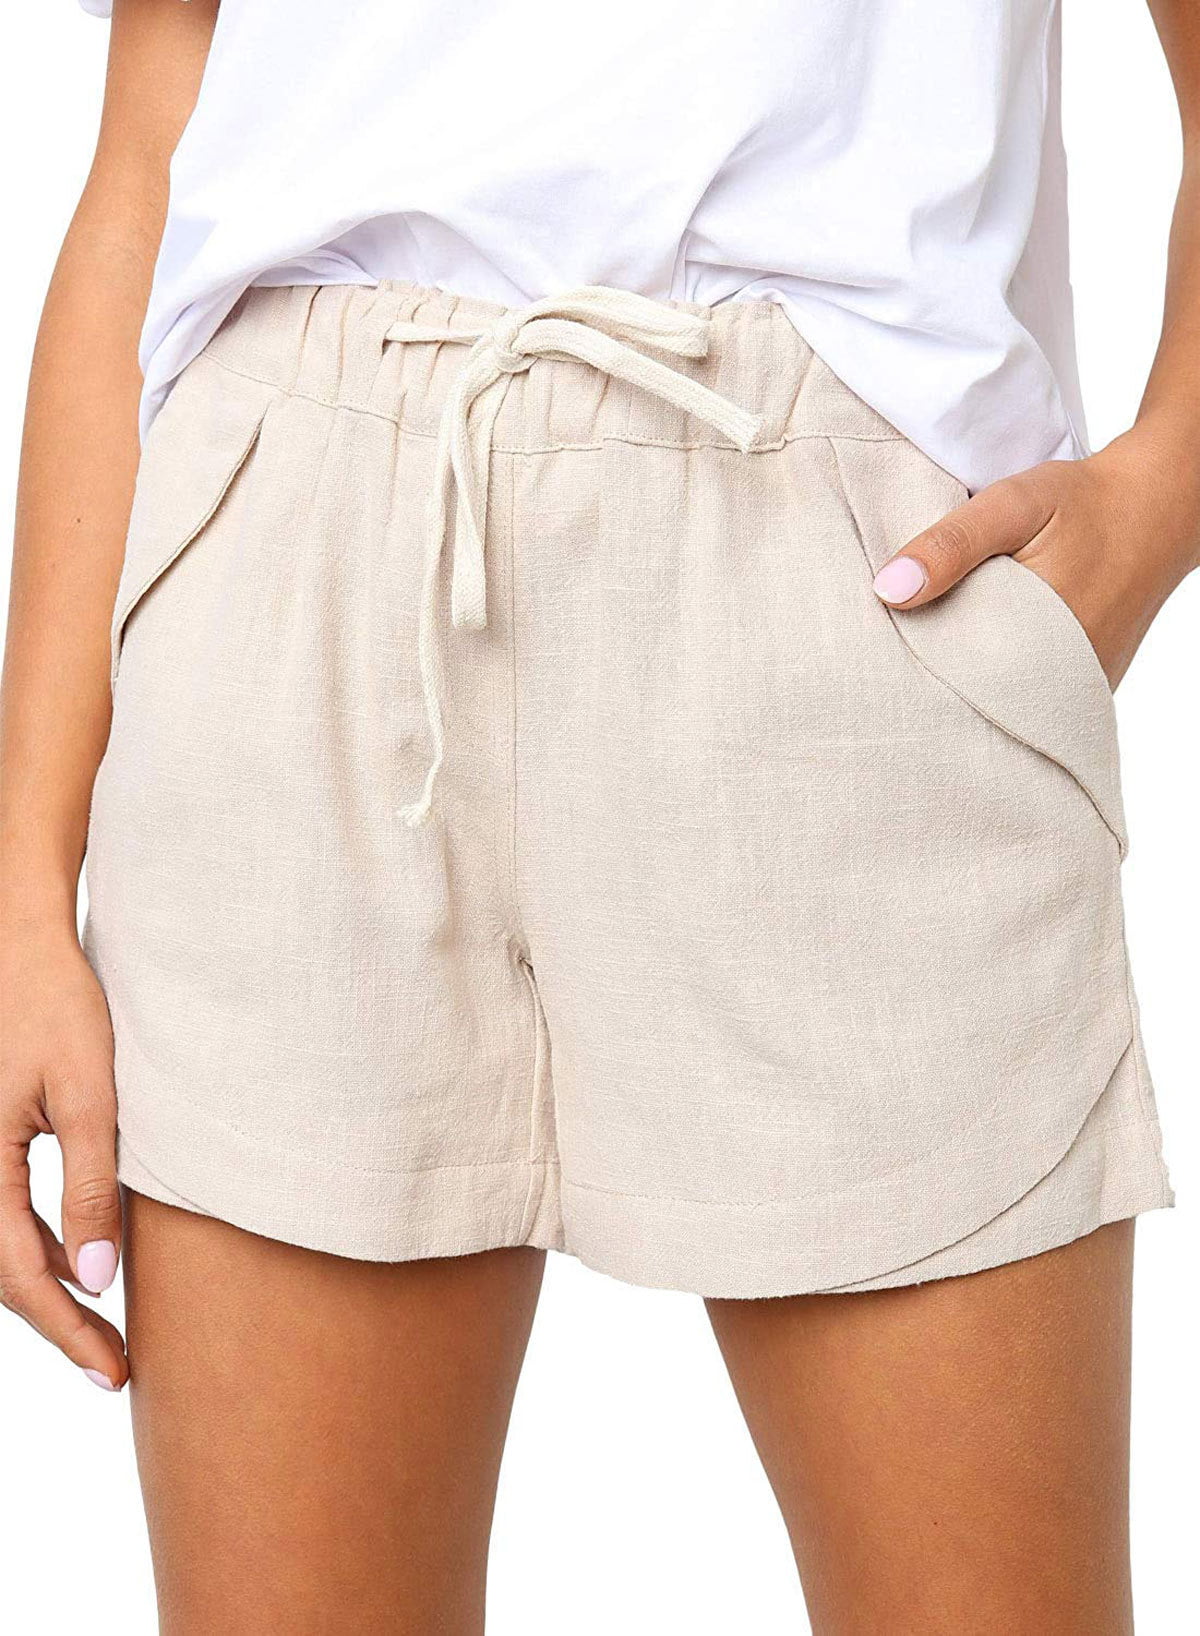 pipigo Womens Wide Leg Waist Drawstring Linen Short Pants Casual Shorts